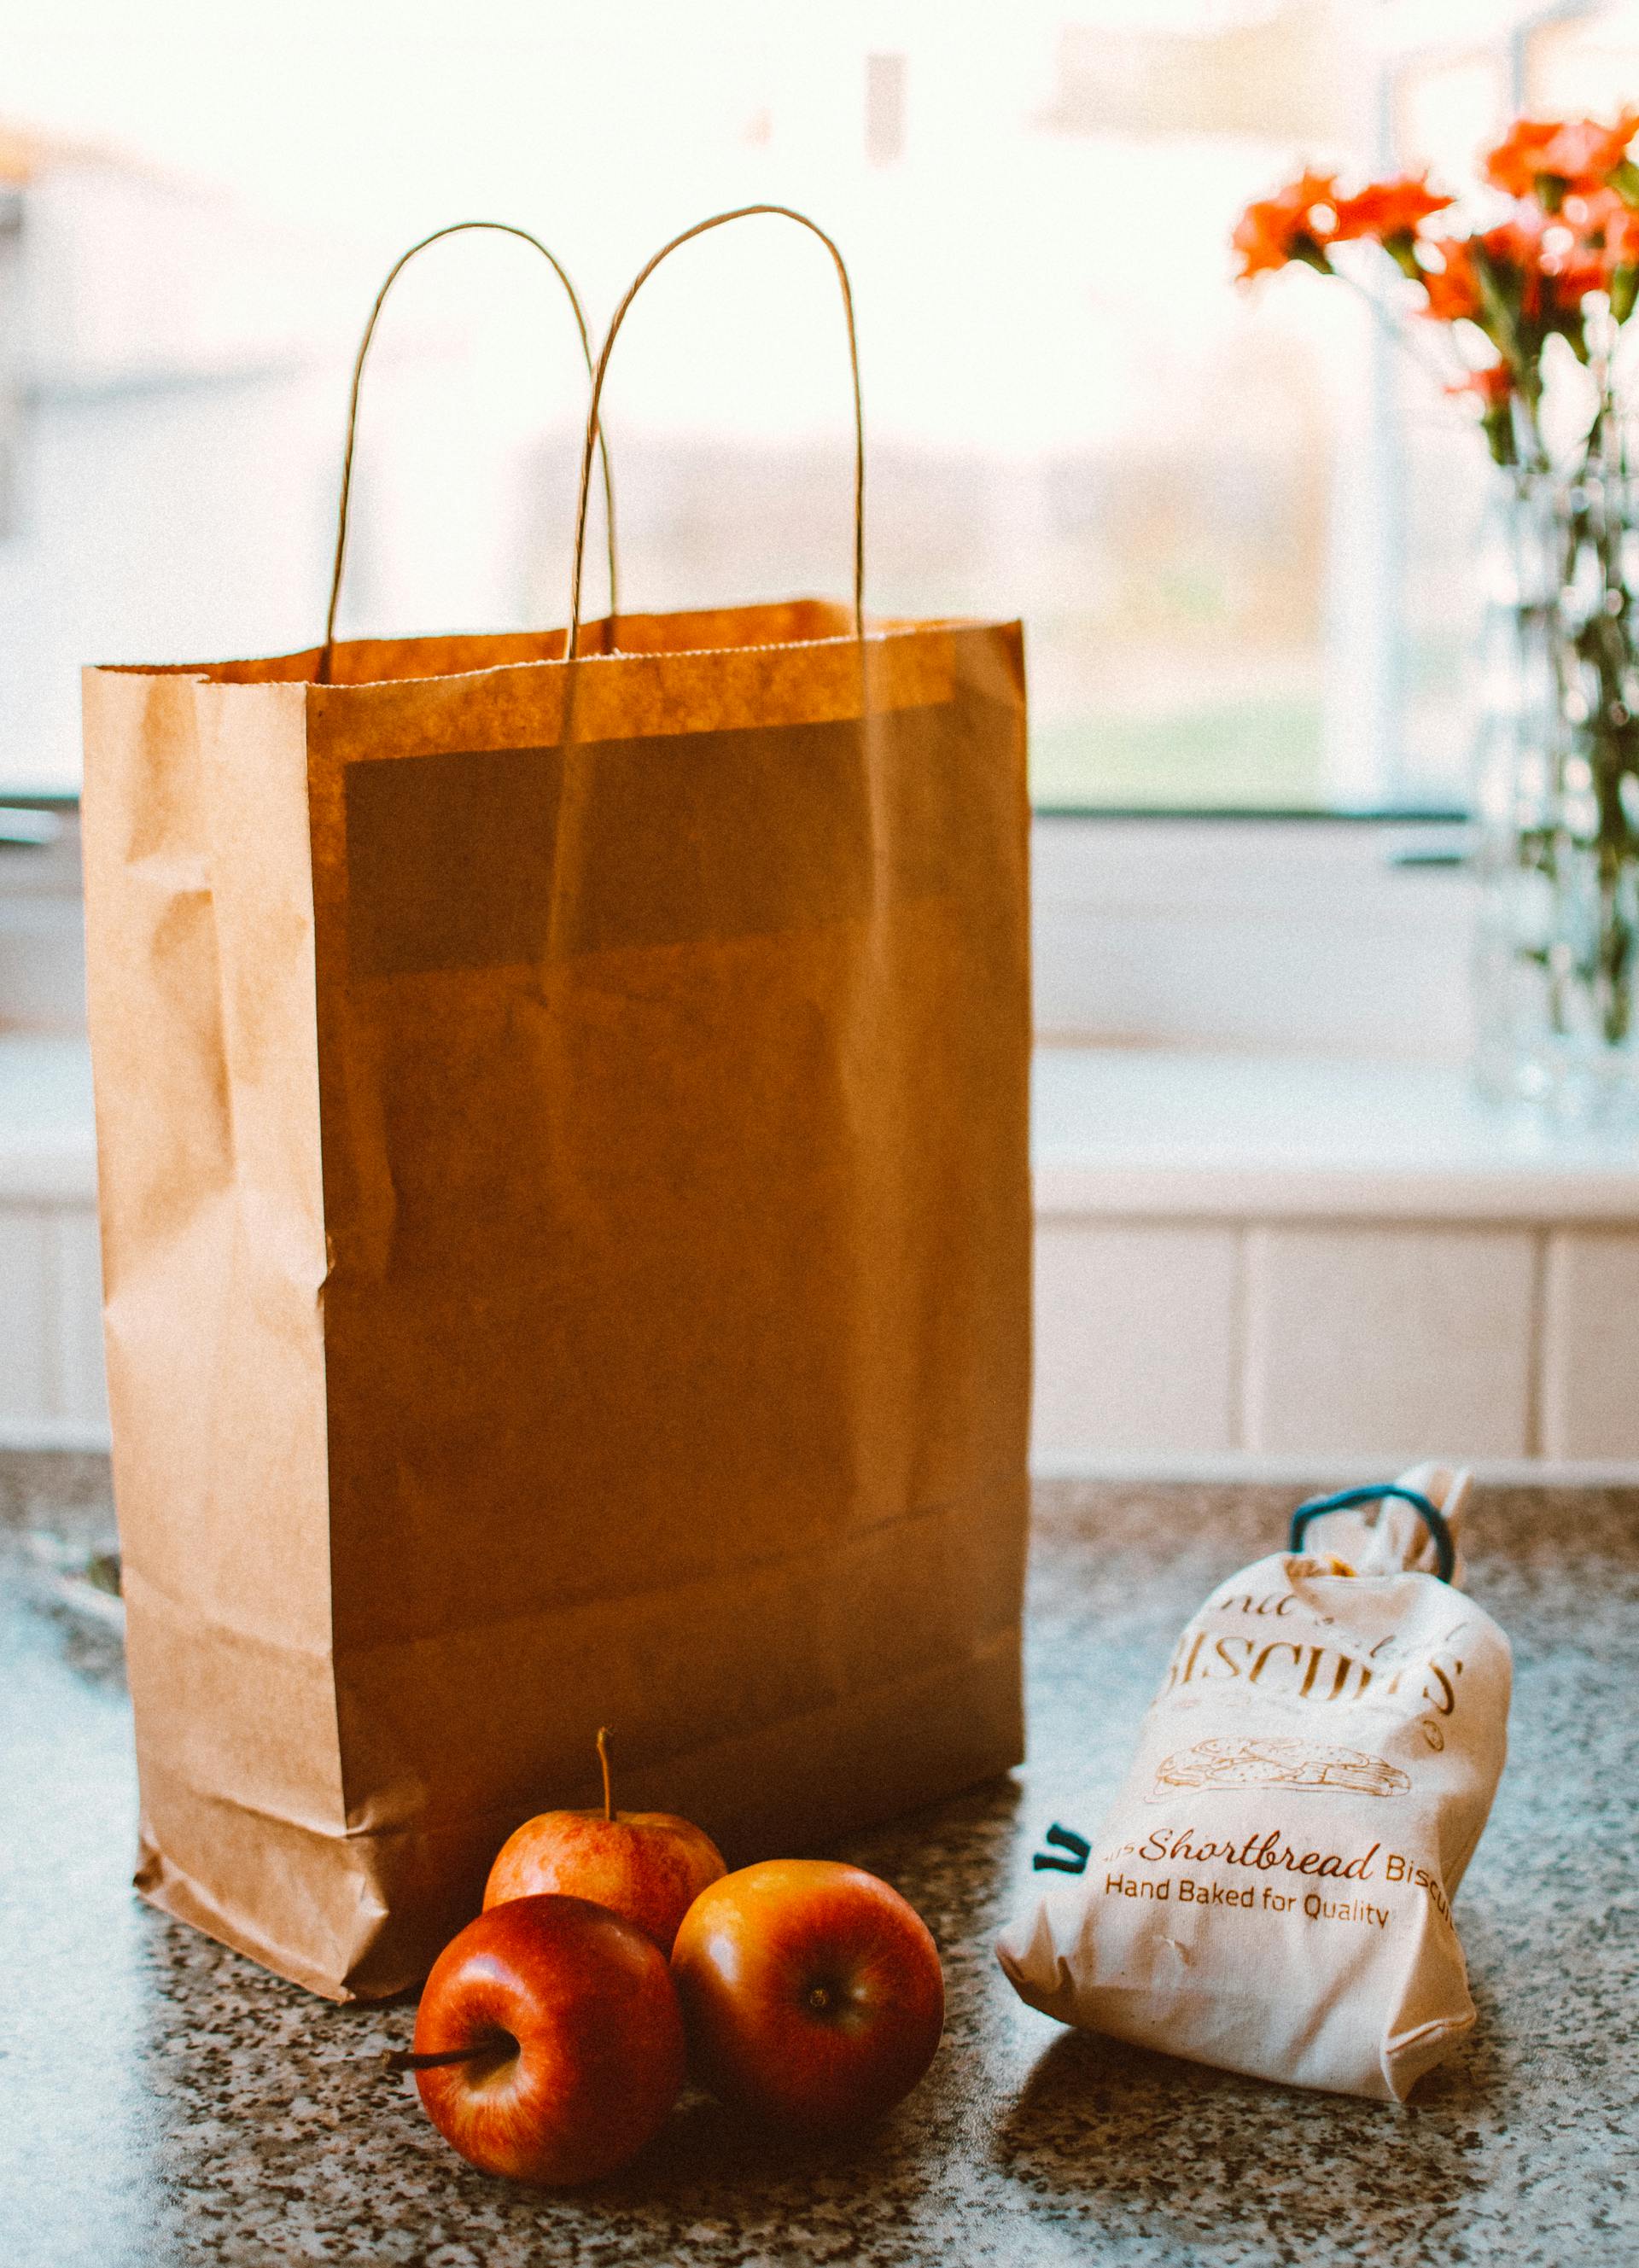 Mehrere Äpfel liegen neben einer braunen Papiertüte und einer Packung Brot | Quelle: Pexels